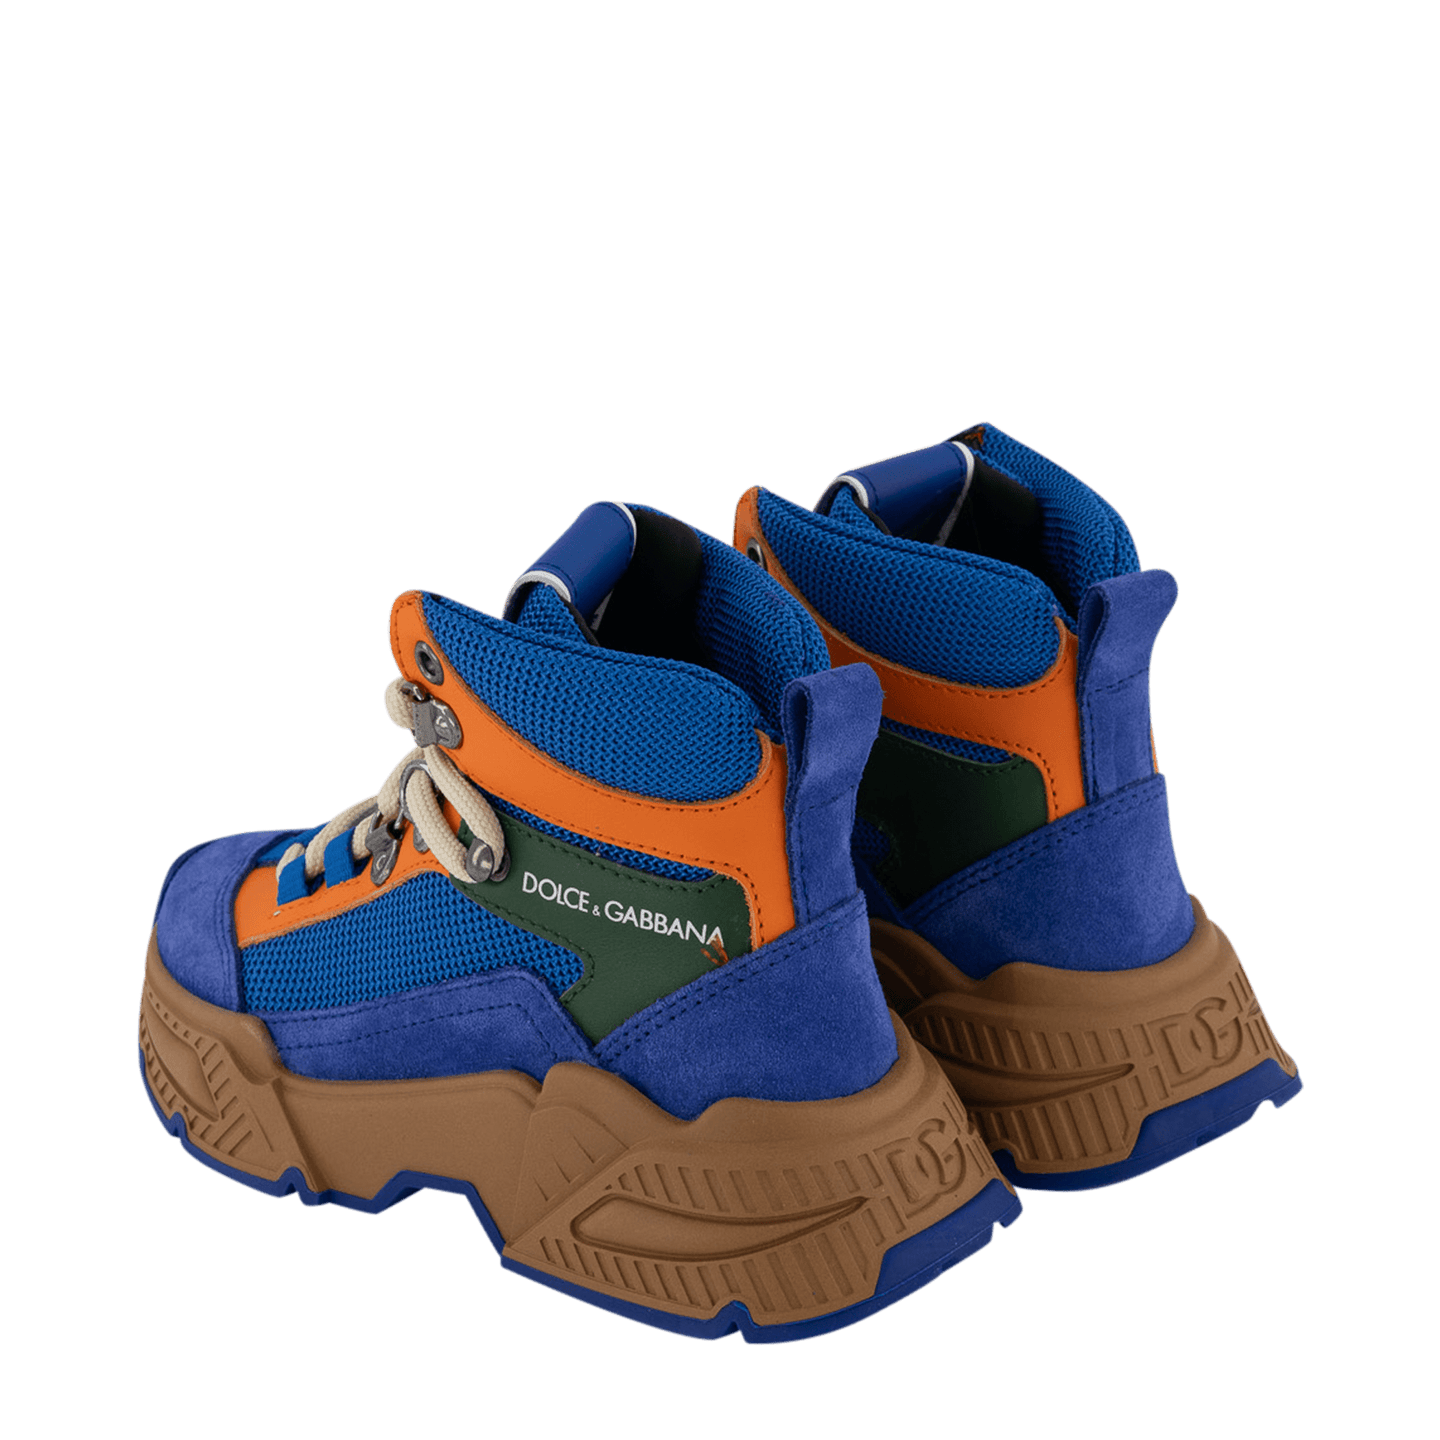 Dolce & Gabbana Kinder Jongens Sneakers Cobalt Blauw 27